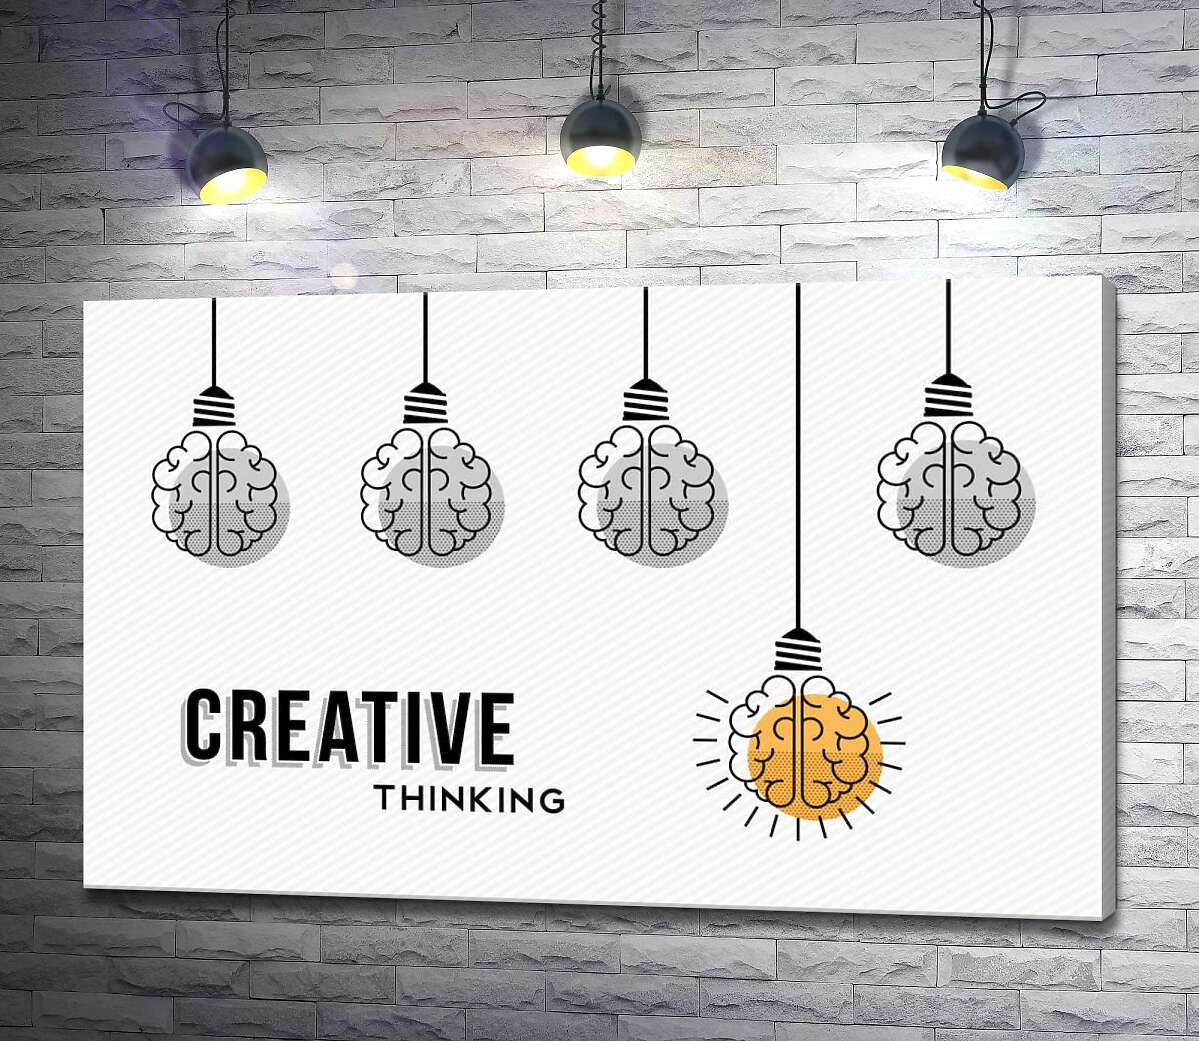 картина Гірлянда із лампочок над фразою "creative thinking"